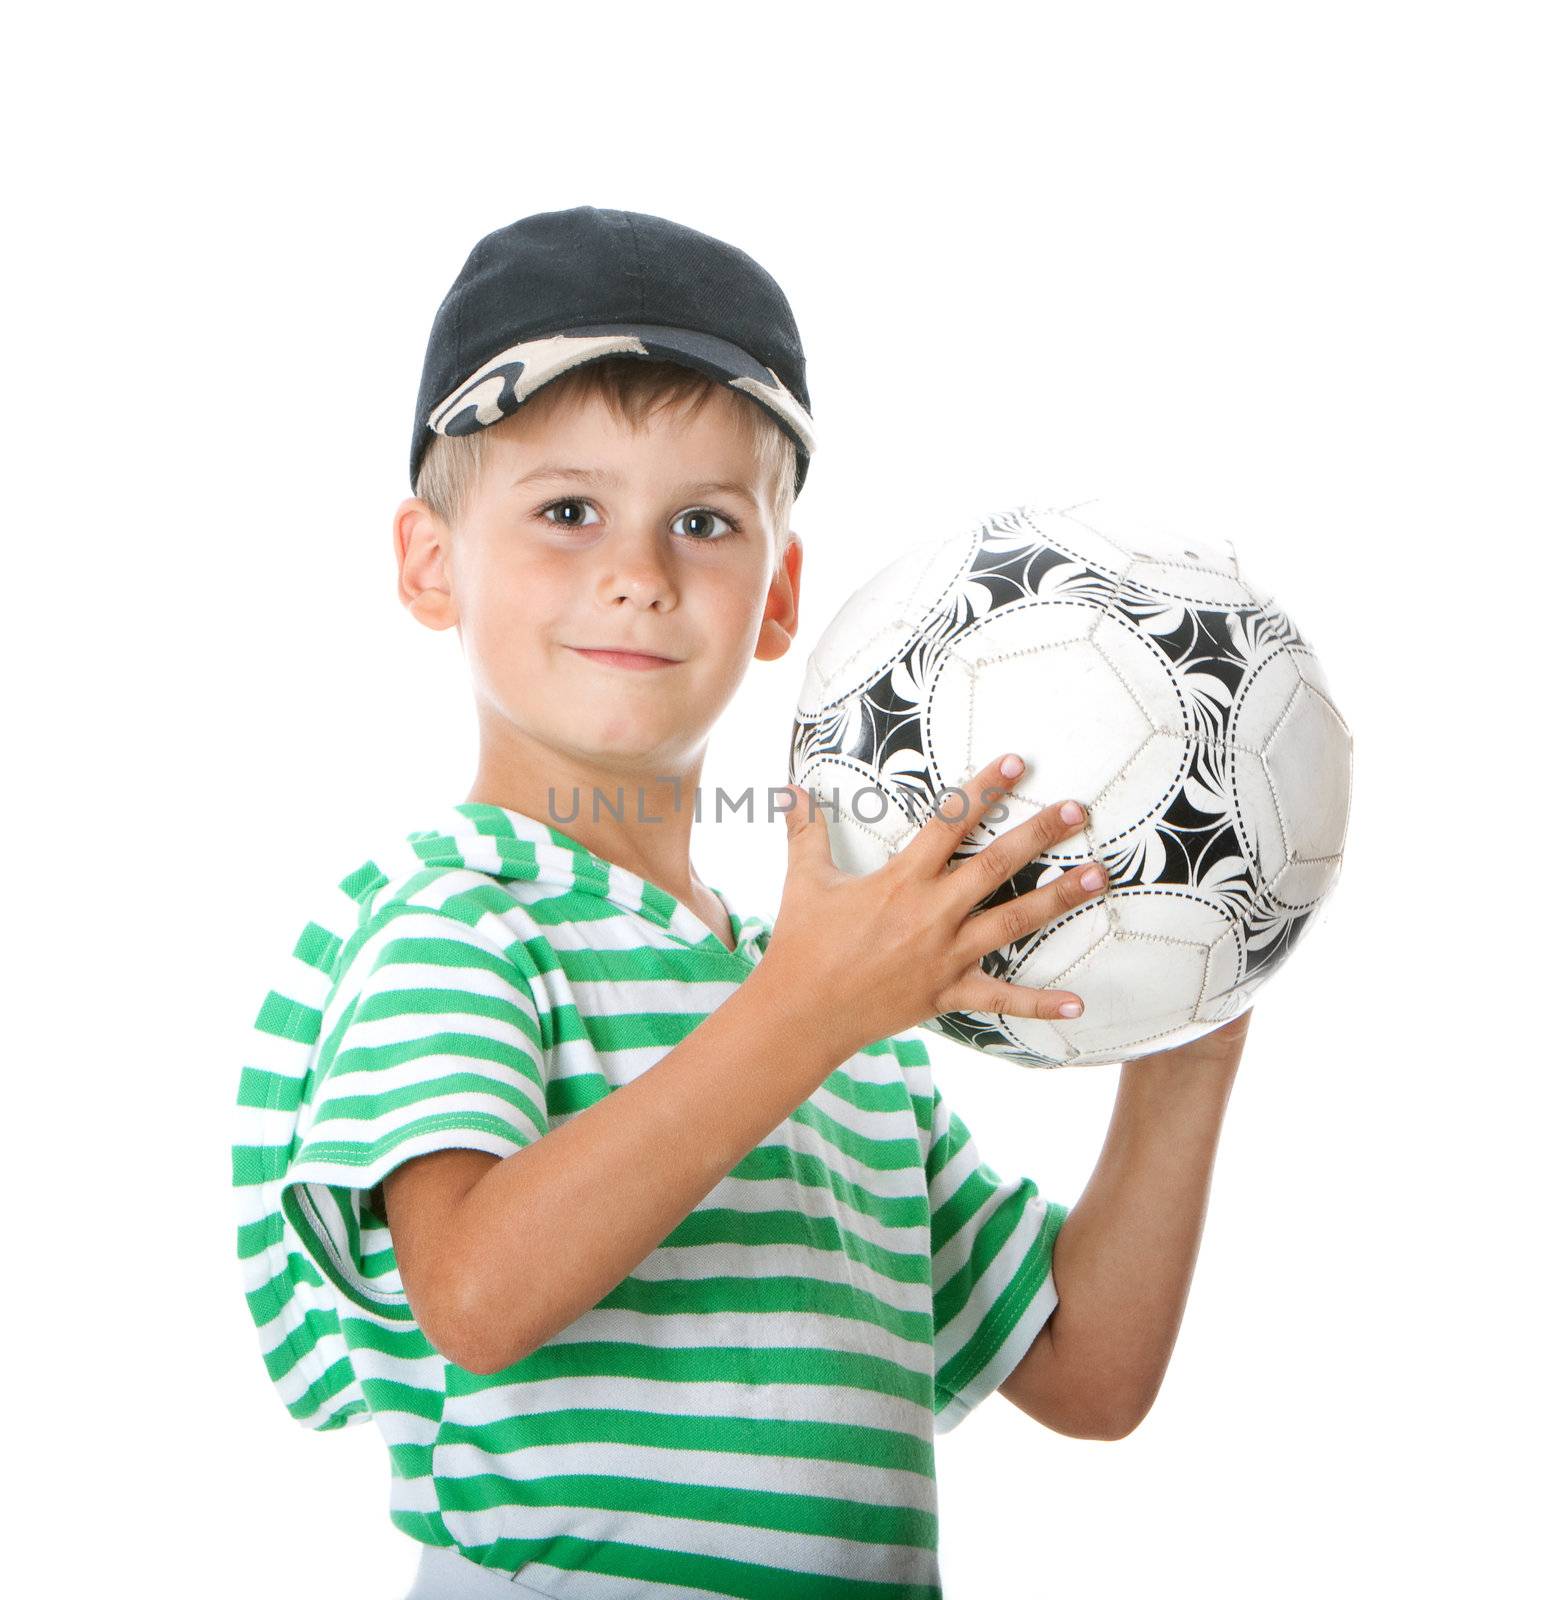 Boy holding soccer ball by bloodua